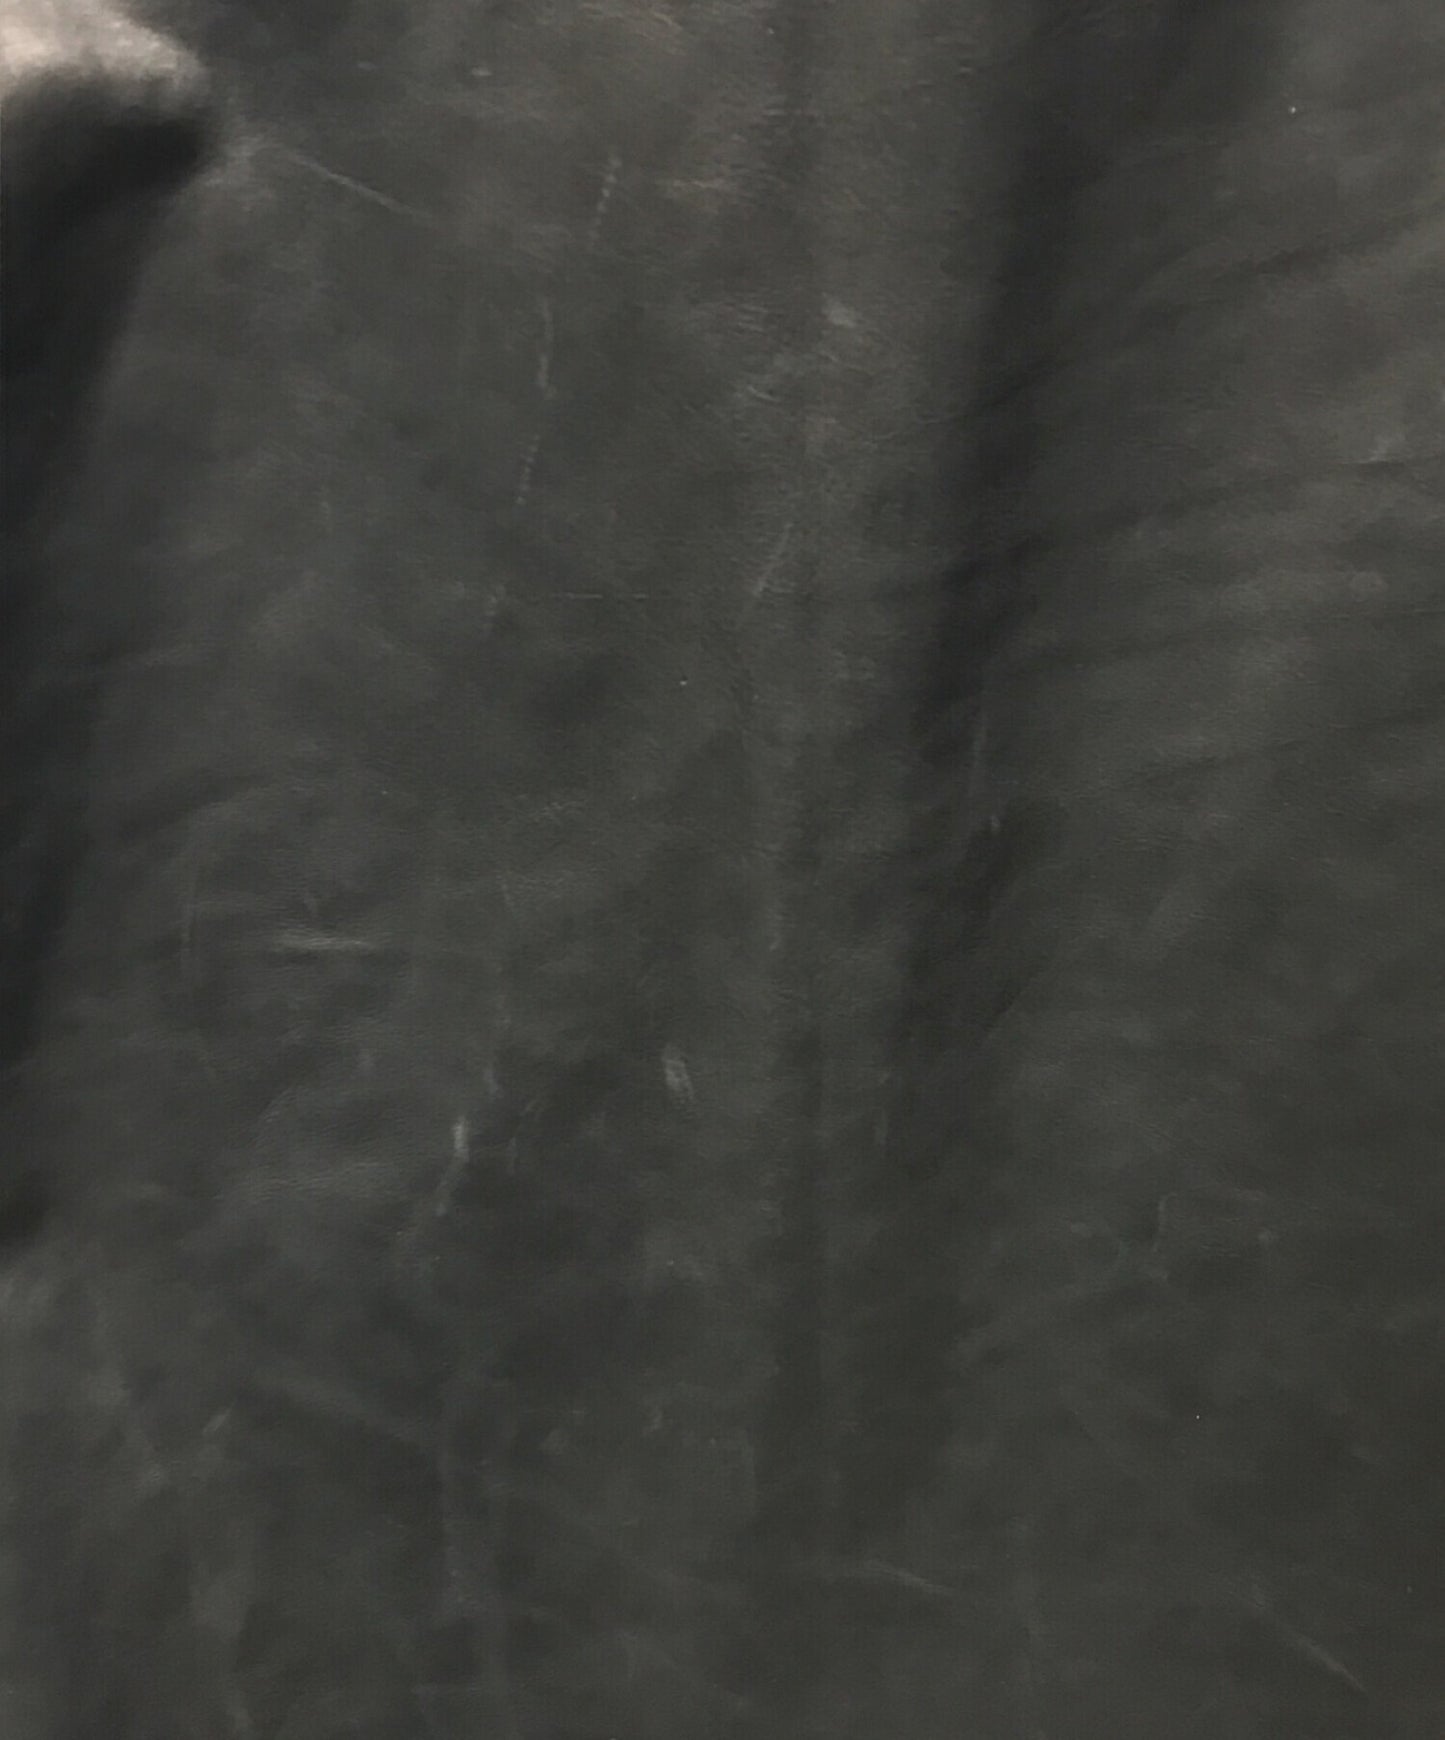 [Pre-owned] Yohji Yamamoto pour homme Leather jacket HX-B03-730 HX-B03-730